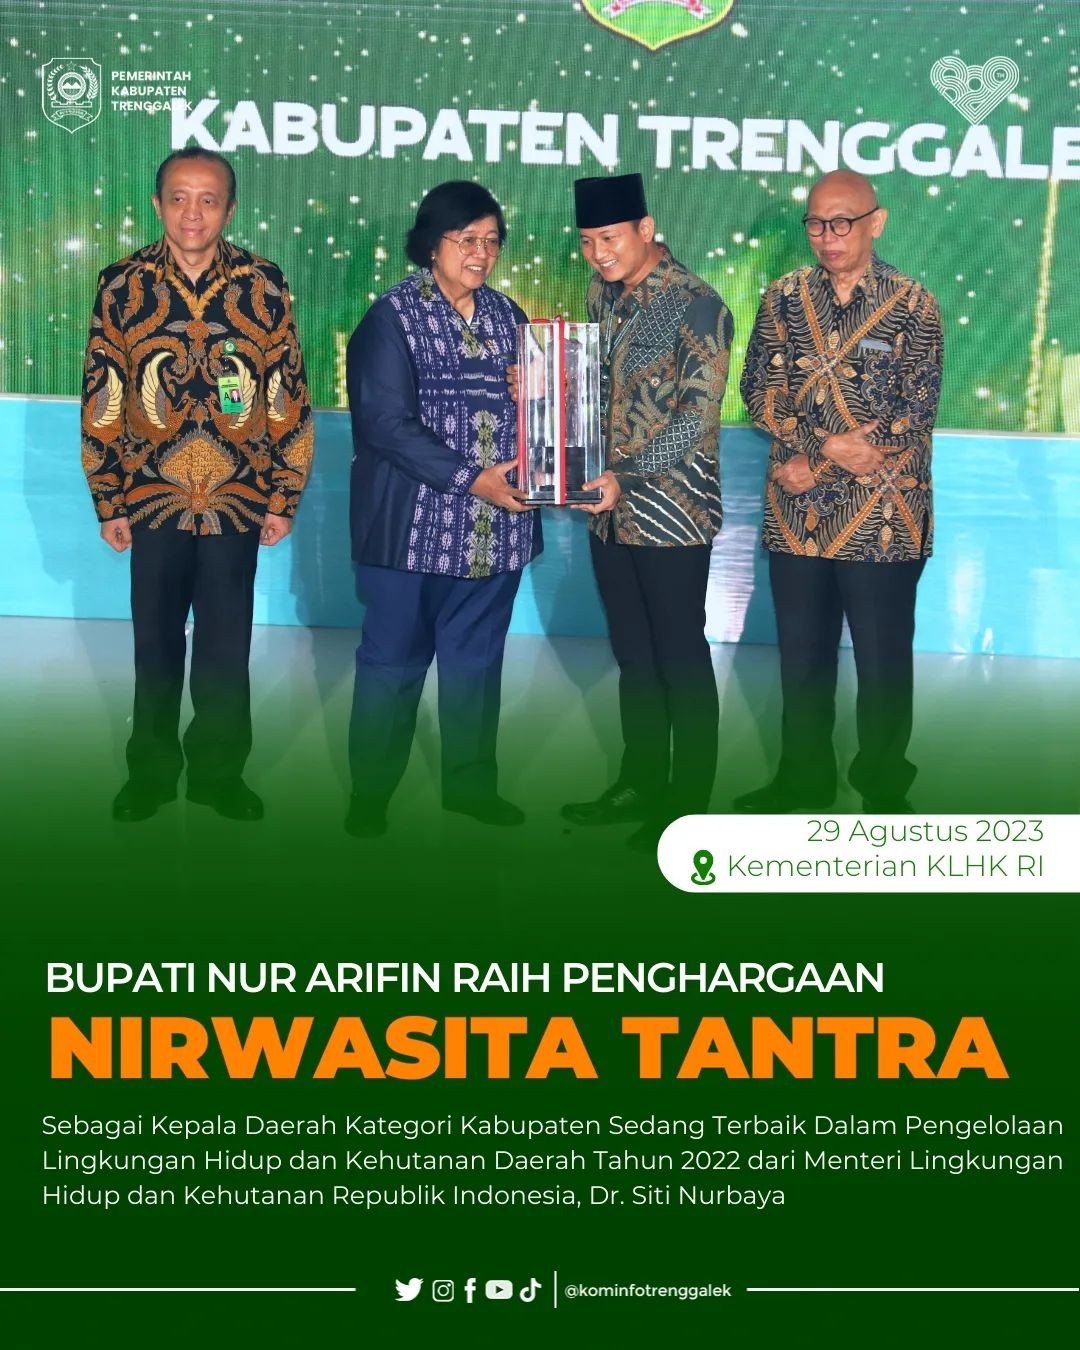 Bupati Nur Arifin Raih Penghargaan Nirwasita Tantra 2022